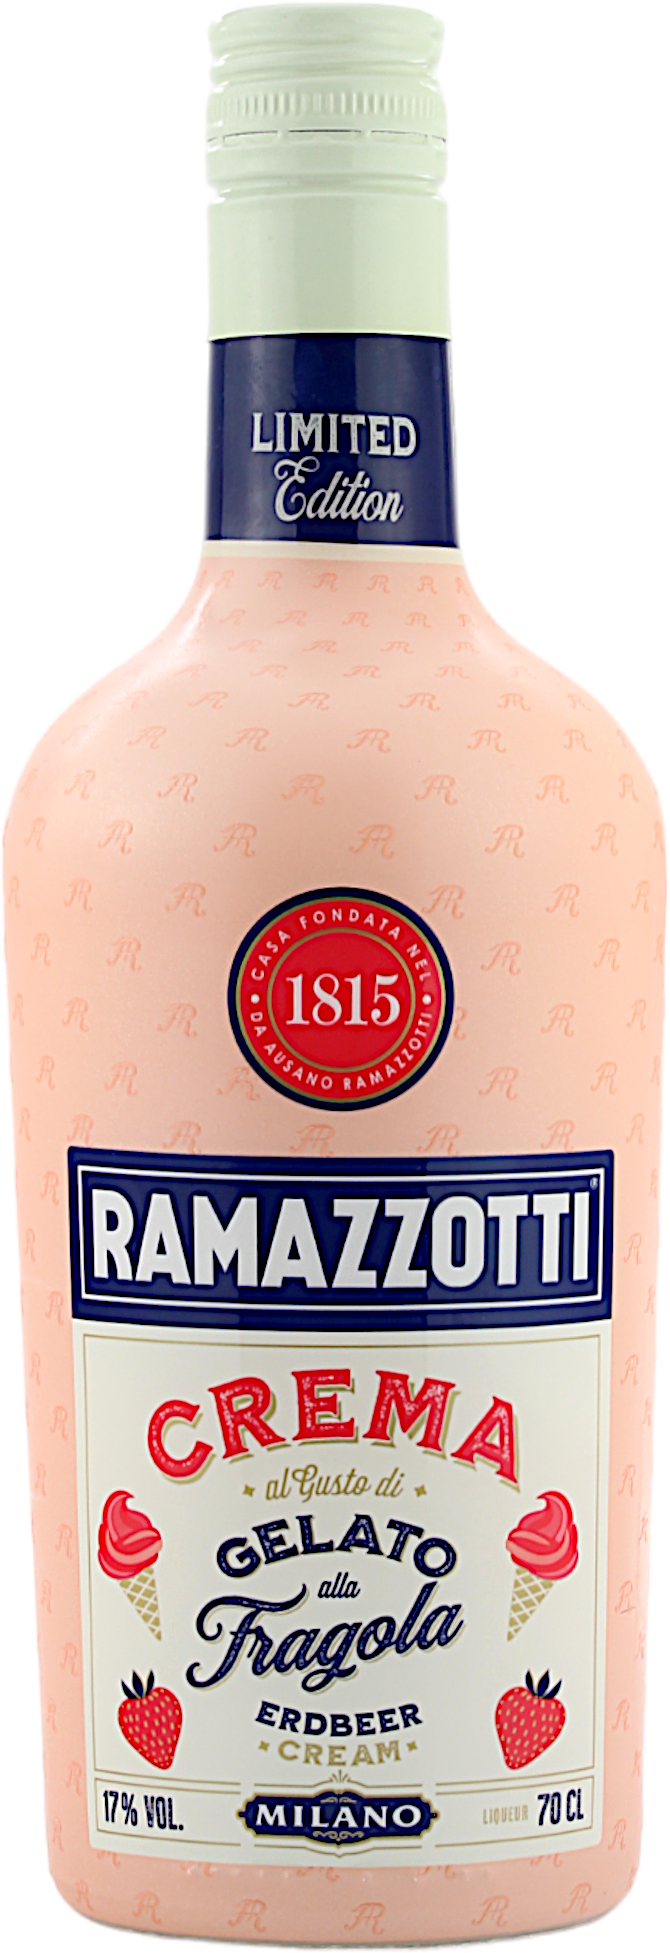 Ramazzotti Crema Gelato alla Fragola 17.0% 0,7l